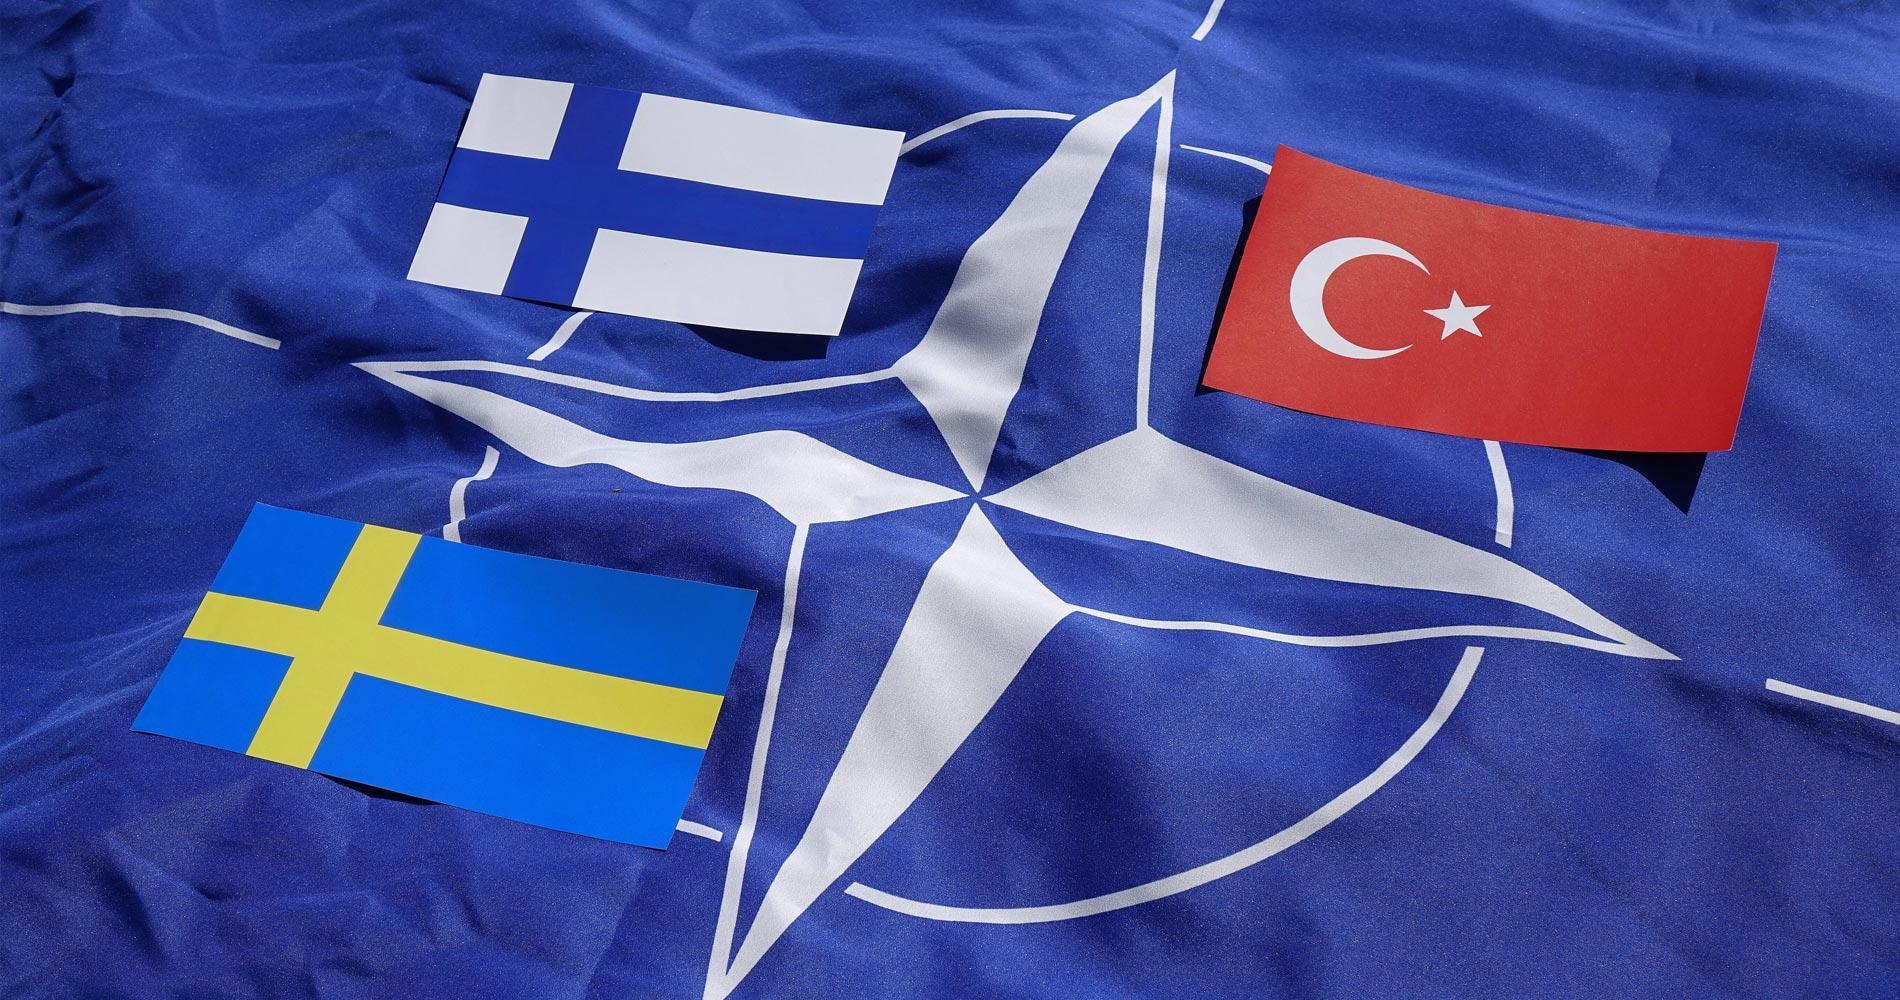 Turkey’s Stance on Sweden’s NATO Bid: “All Politics are Local”